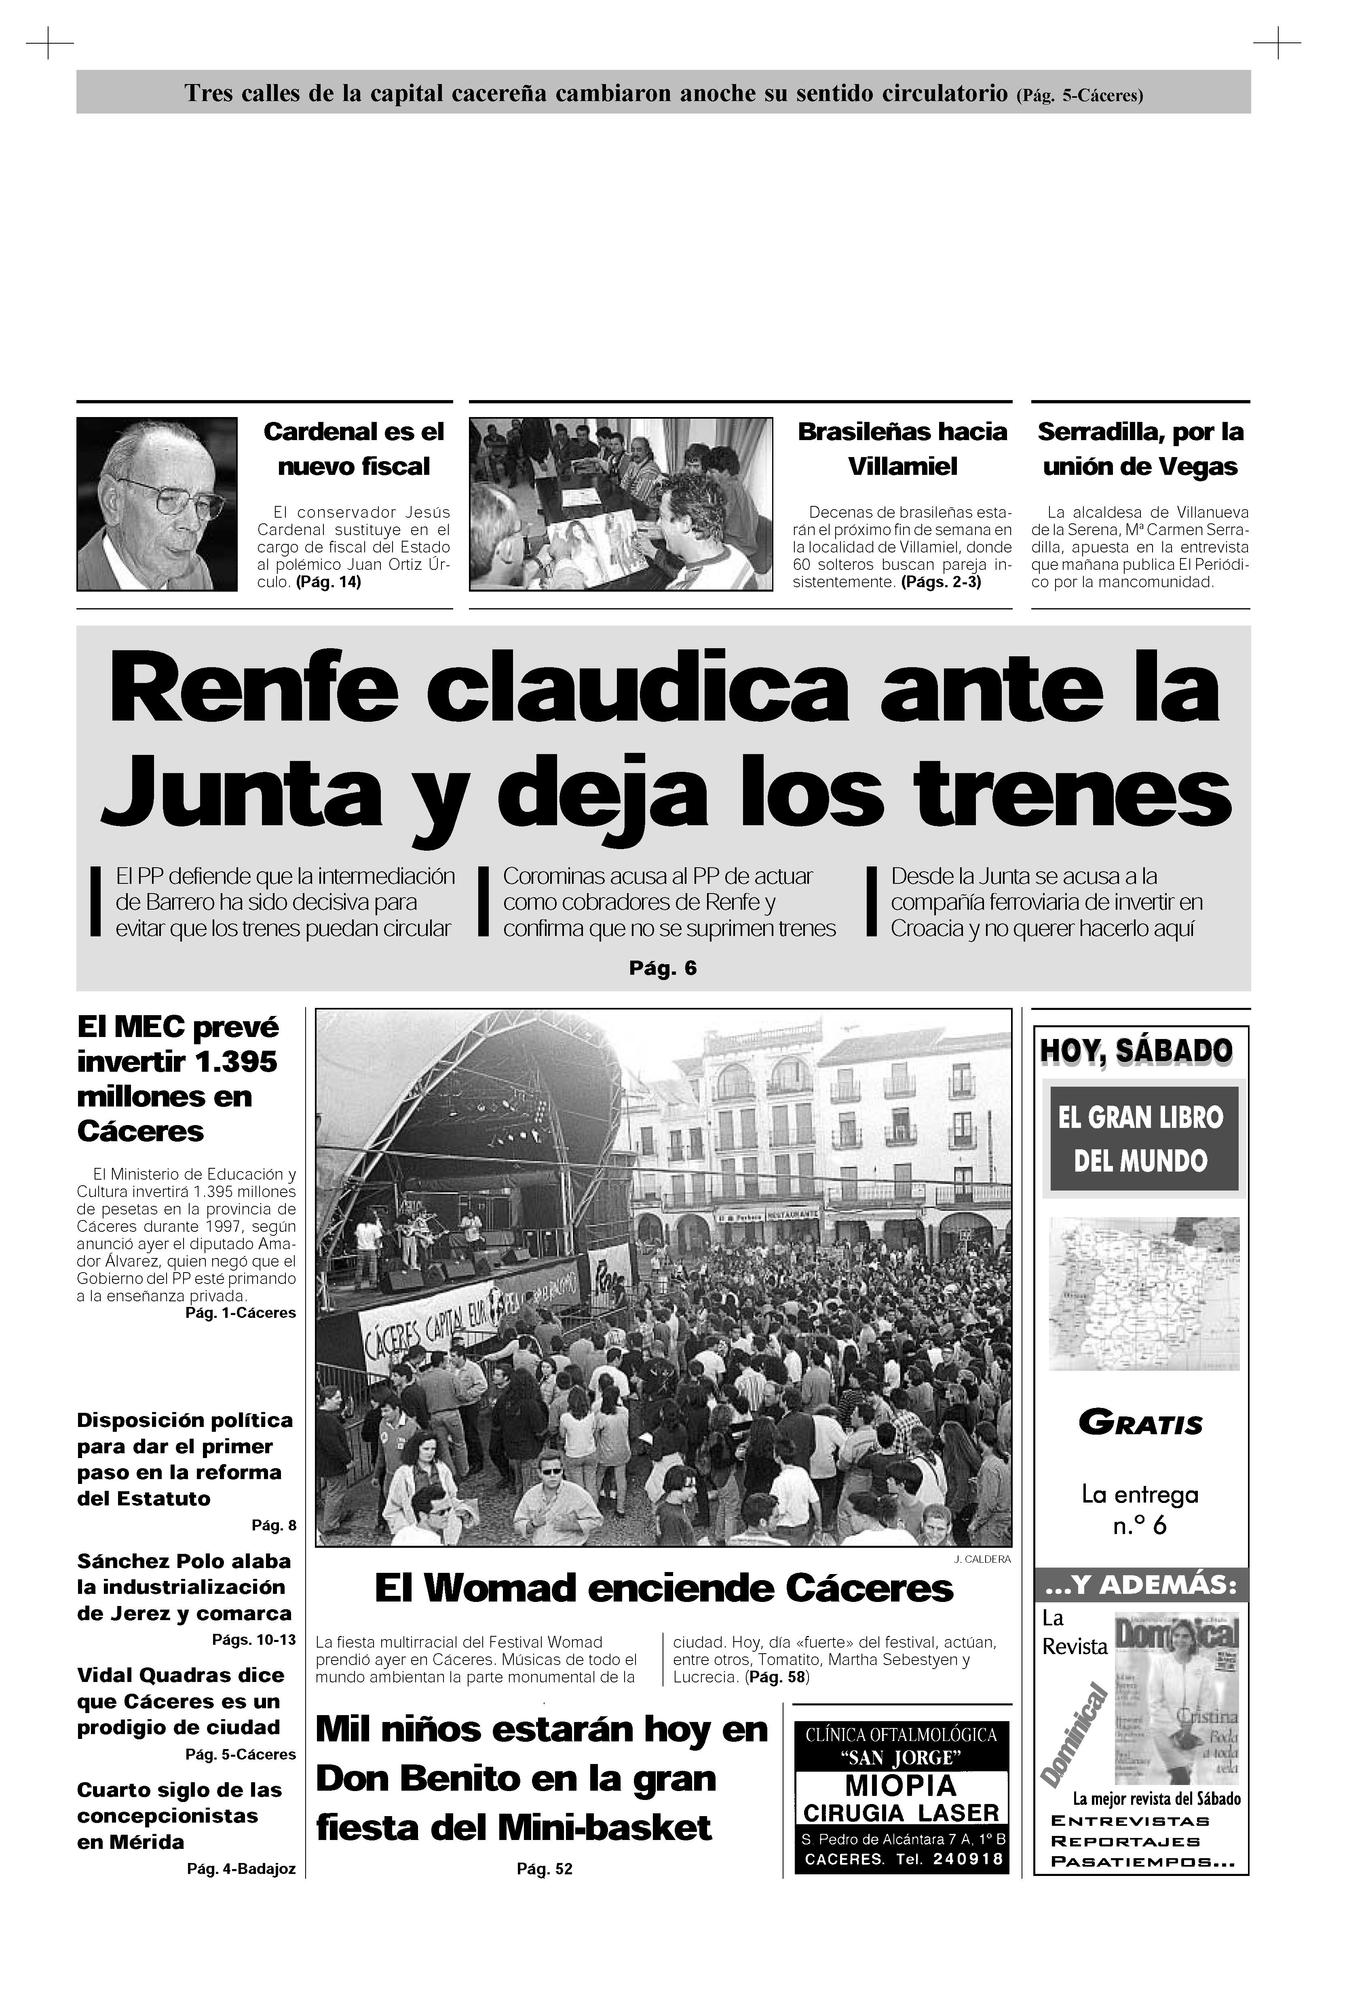 Portada de El Periódico Extremadura el 10 de mayo de 1997.